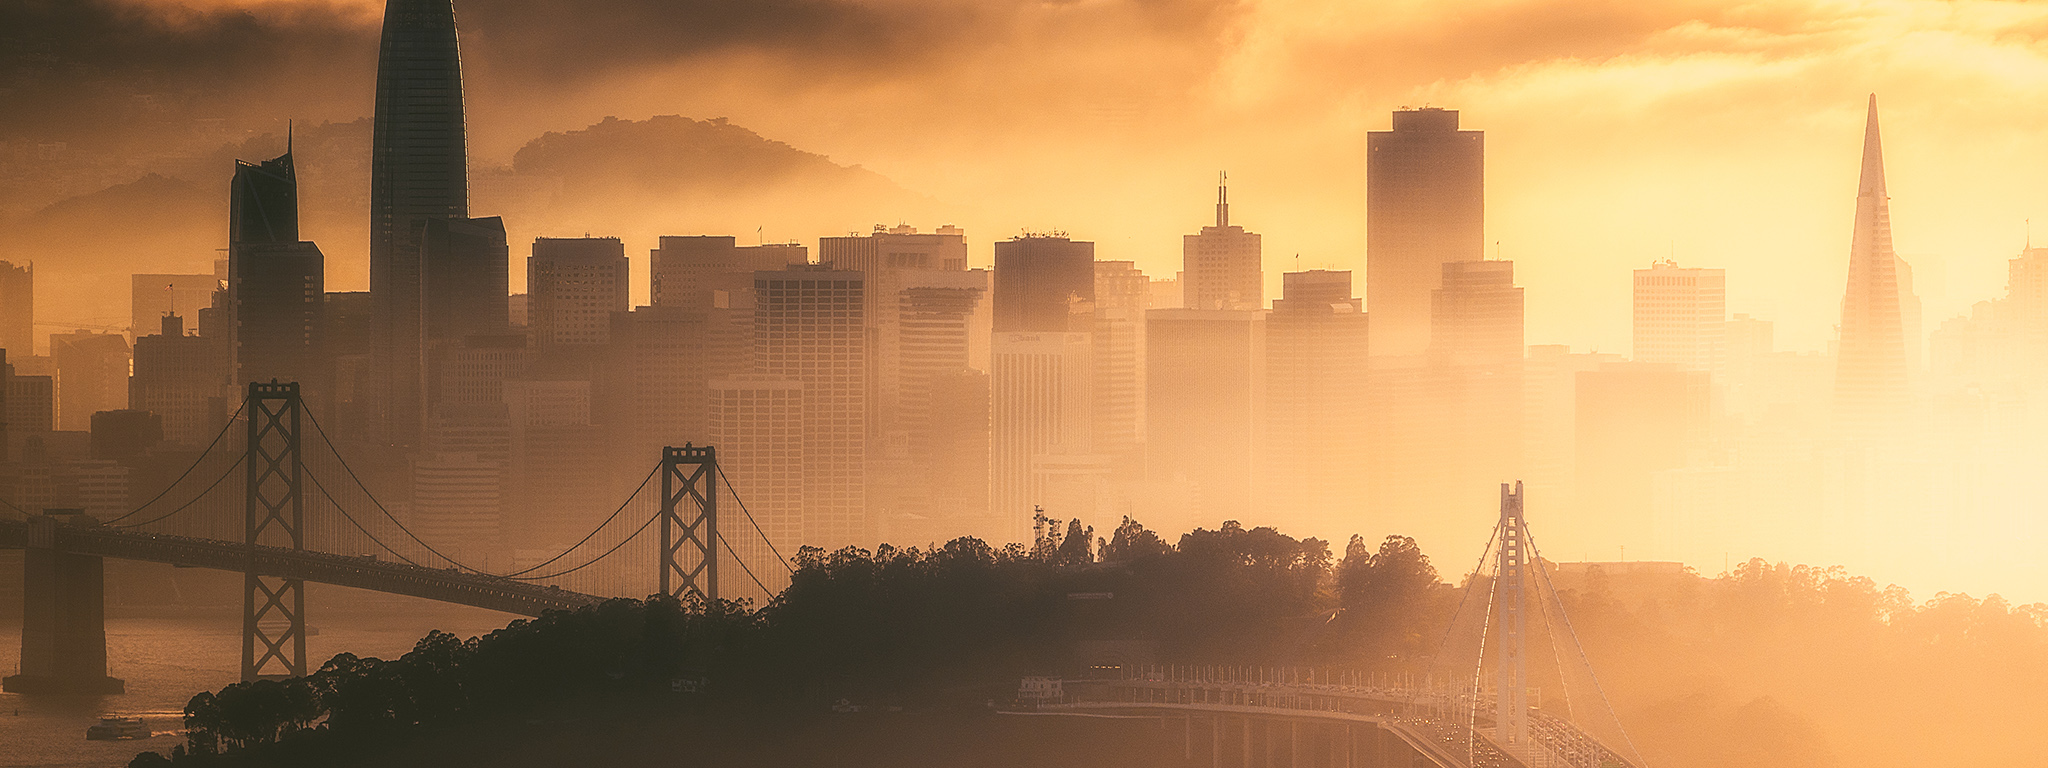 Gün batımında San Francisco siluetinin arkasında bulutlar